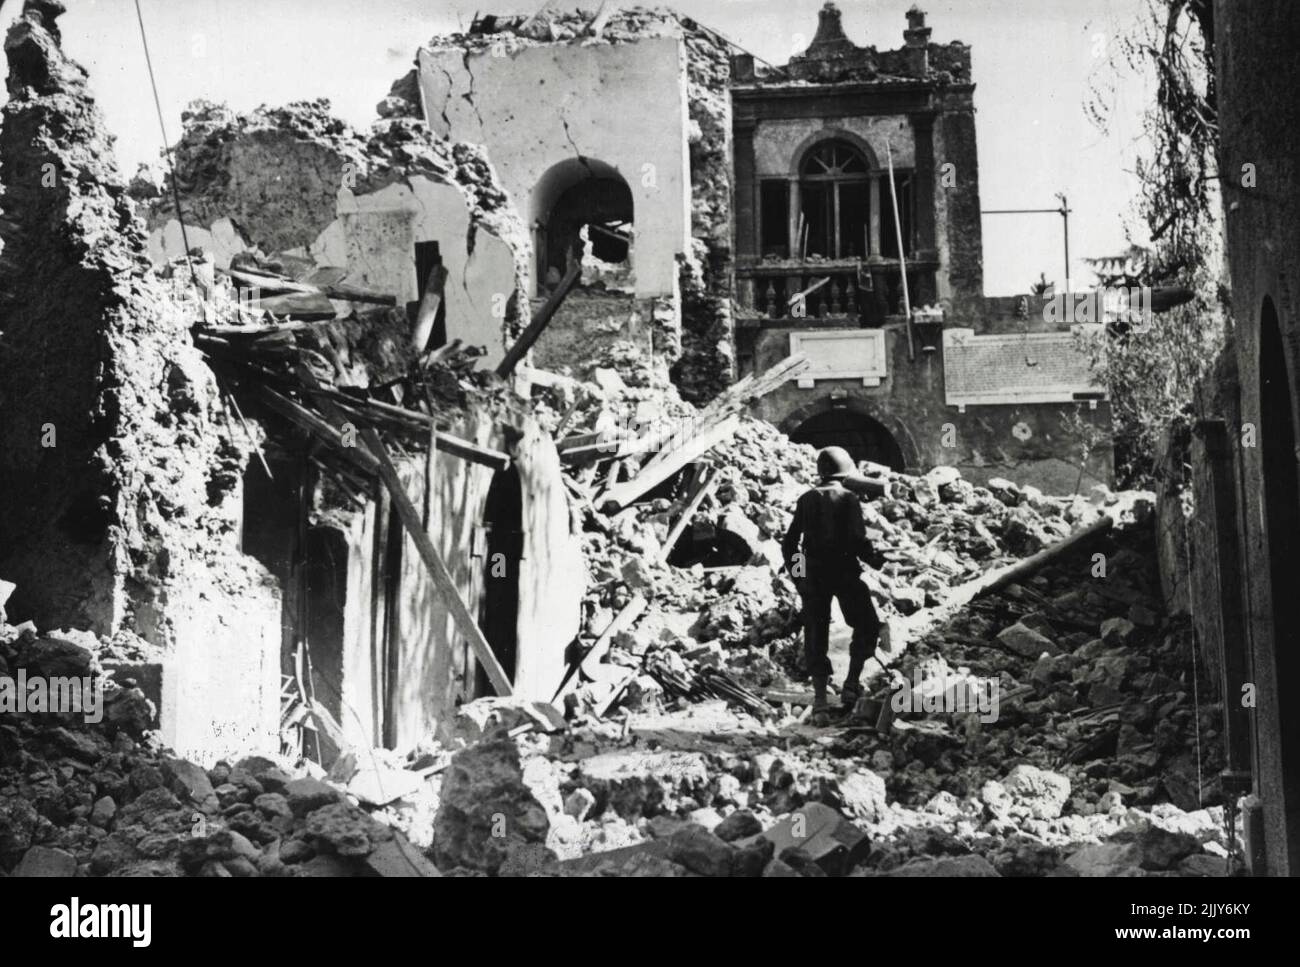 Le quartier général fasciste a fait un blason dans la ville sicilienne -- un soldat américain se fraye le chemin à travers l'épave du quartier général fasciste de Randazzo, en Sicile, blagé à l'enorée par les bombardements alliés. Randazzo s'est rendu aux forces des Nations Unies le 13 août, quatre jours avant la chute de Messine, le dernier bastion de l'axe, a mis fin à la campagne alliée de 38 jours sur l'île italienne. 01 novembre 1943. Banque D'Images